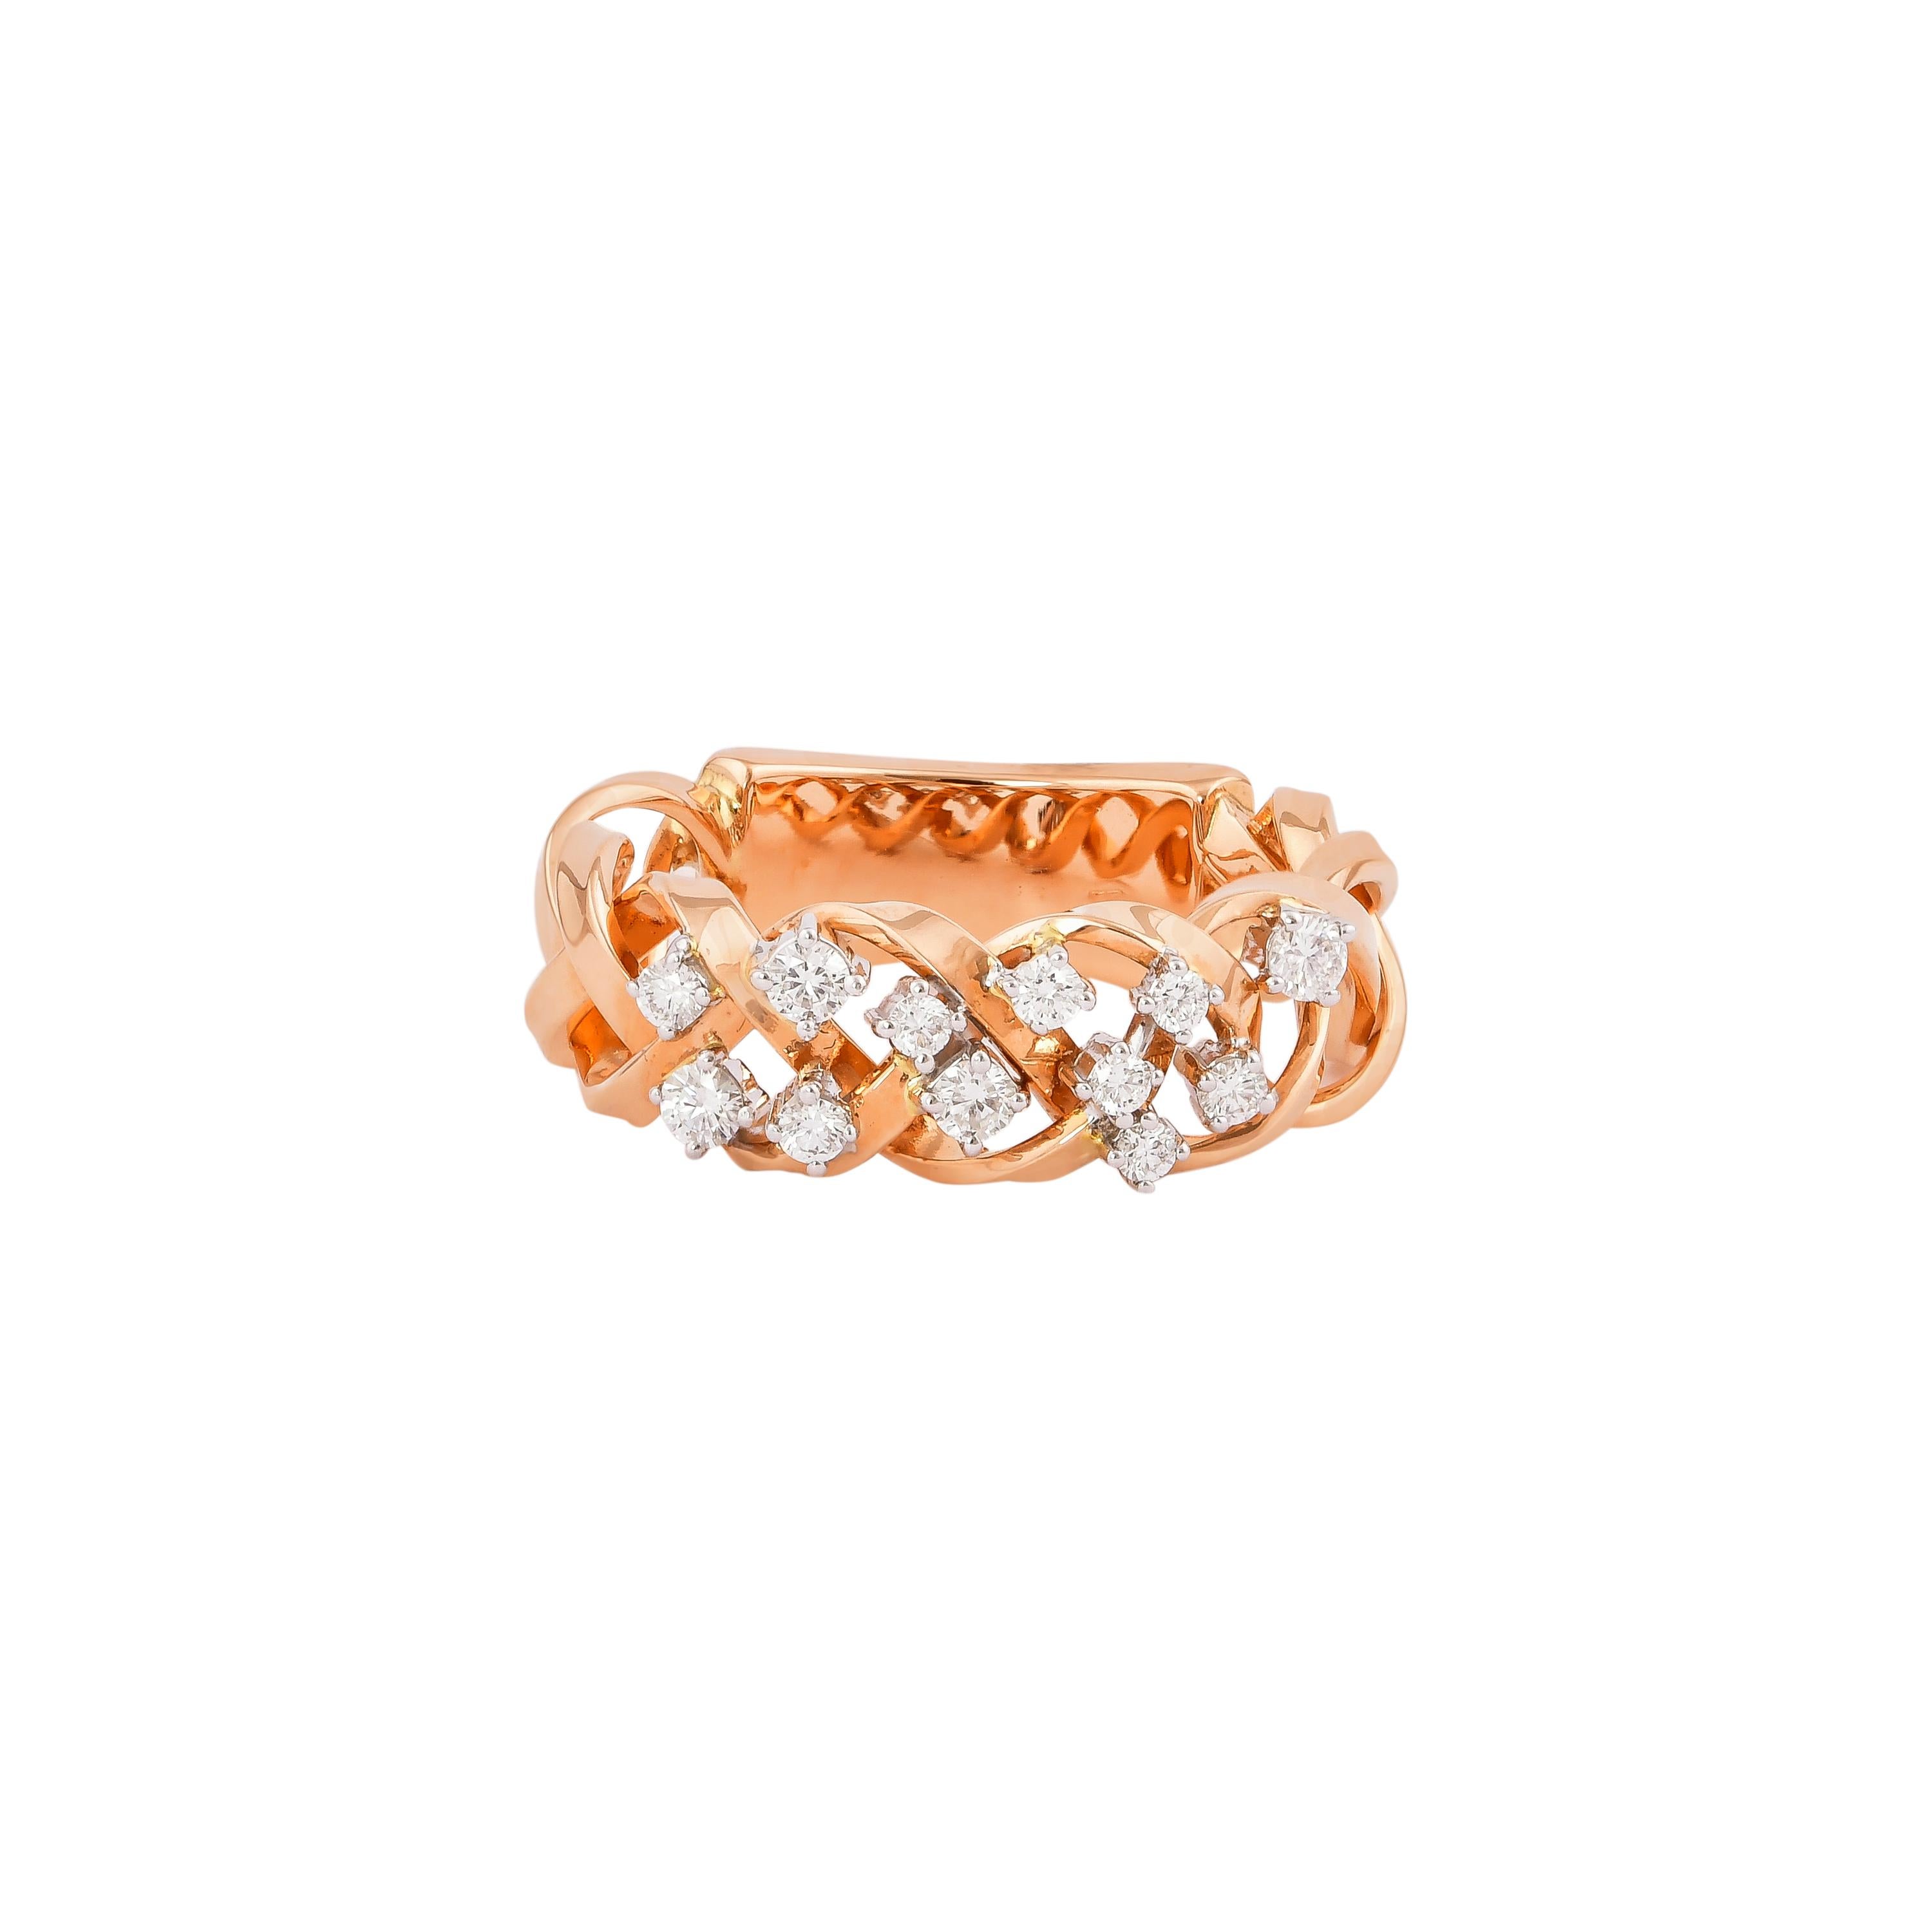 Round Cut 0.354 Carat Diamond Ring in 18 Karat White & Rose Gold For Sale